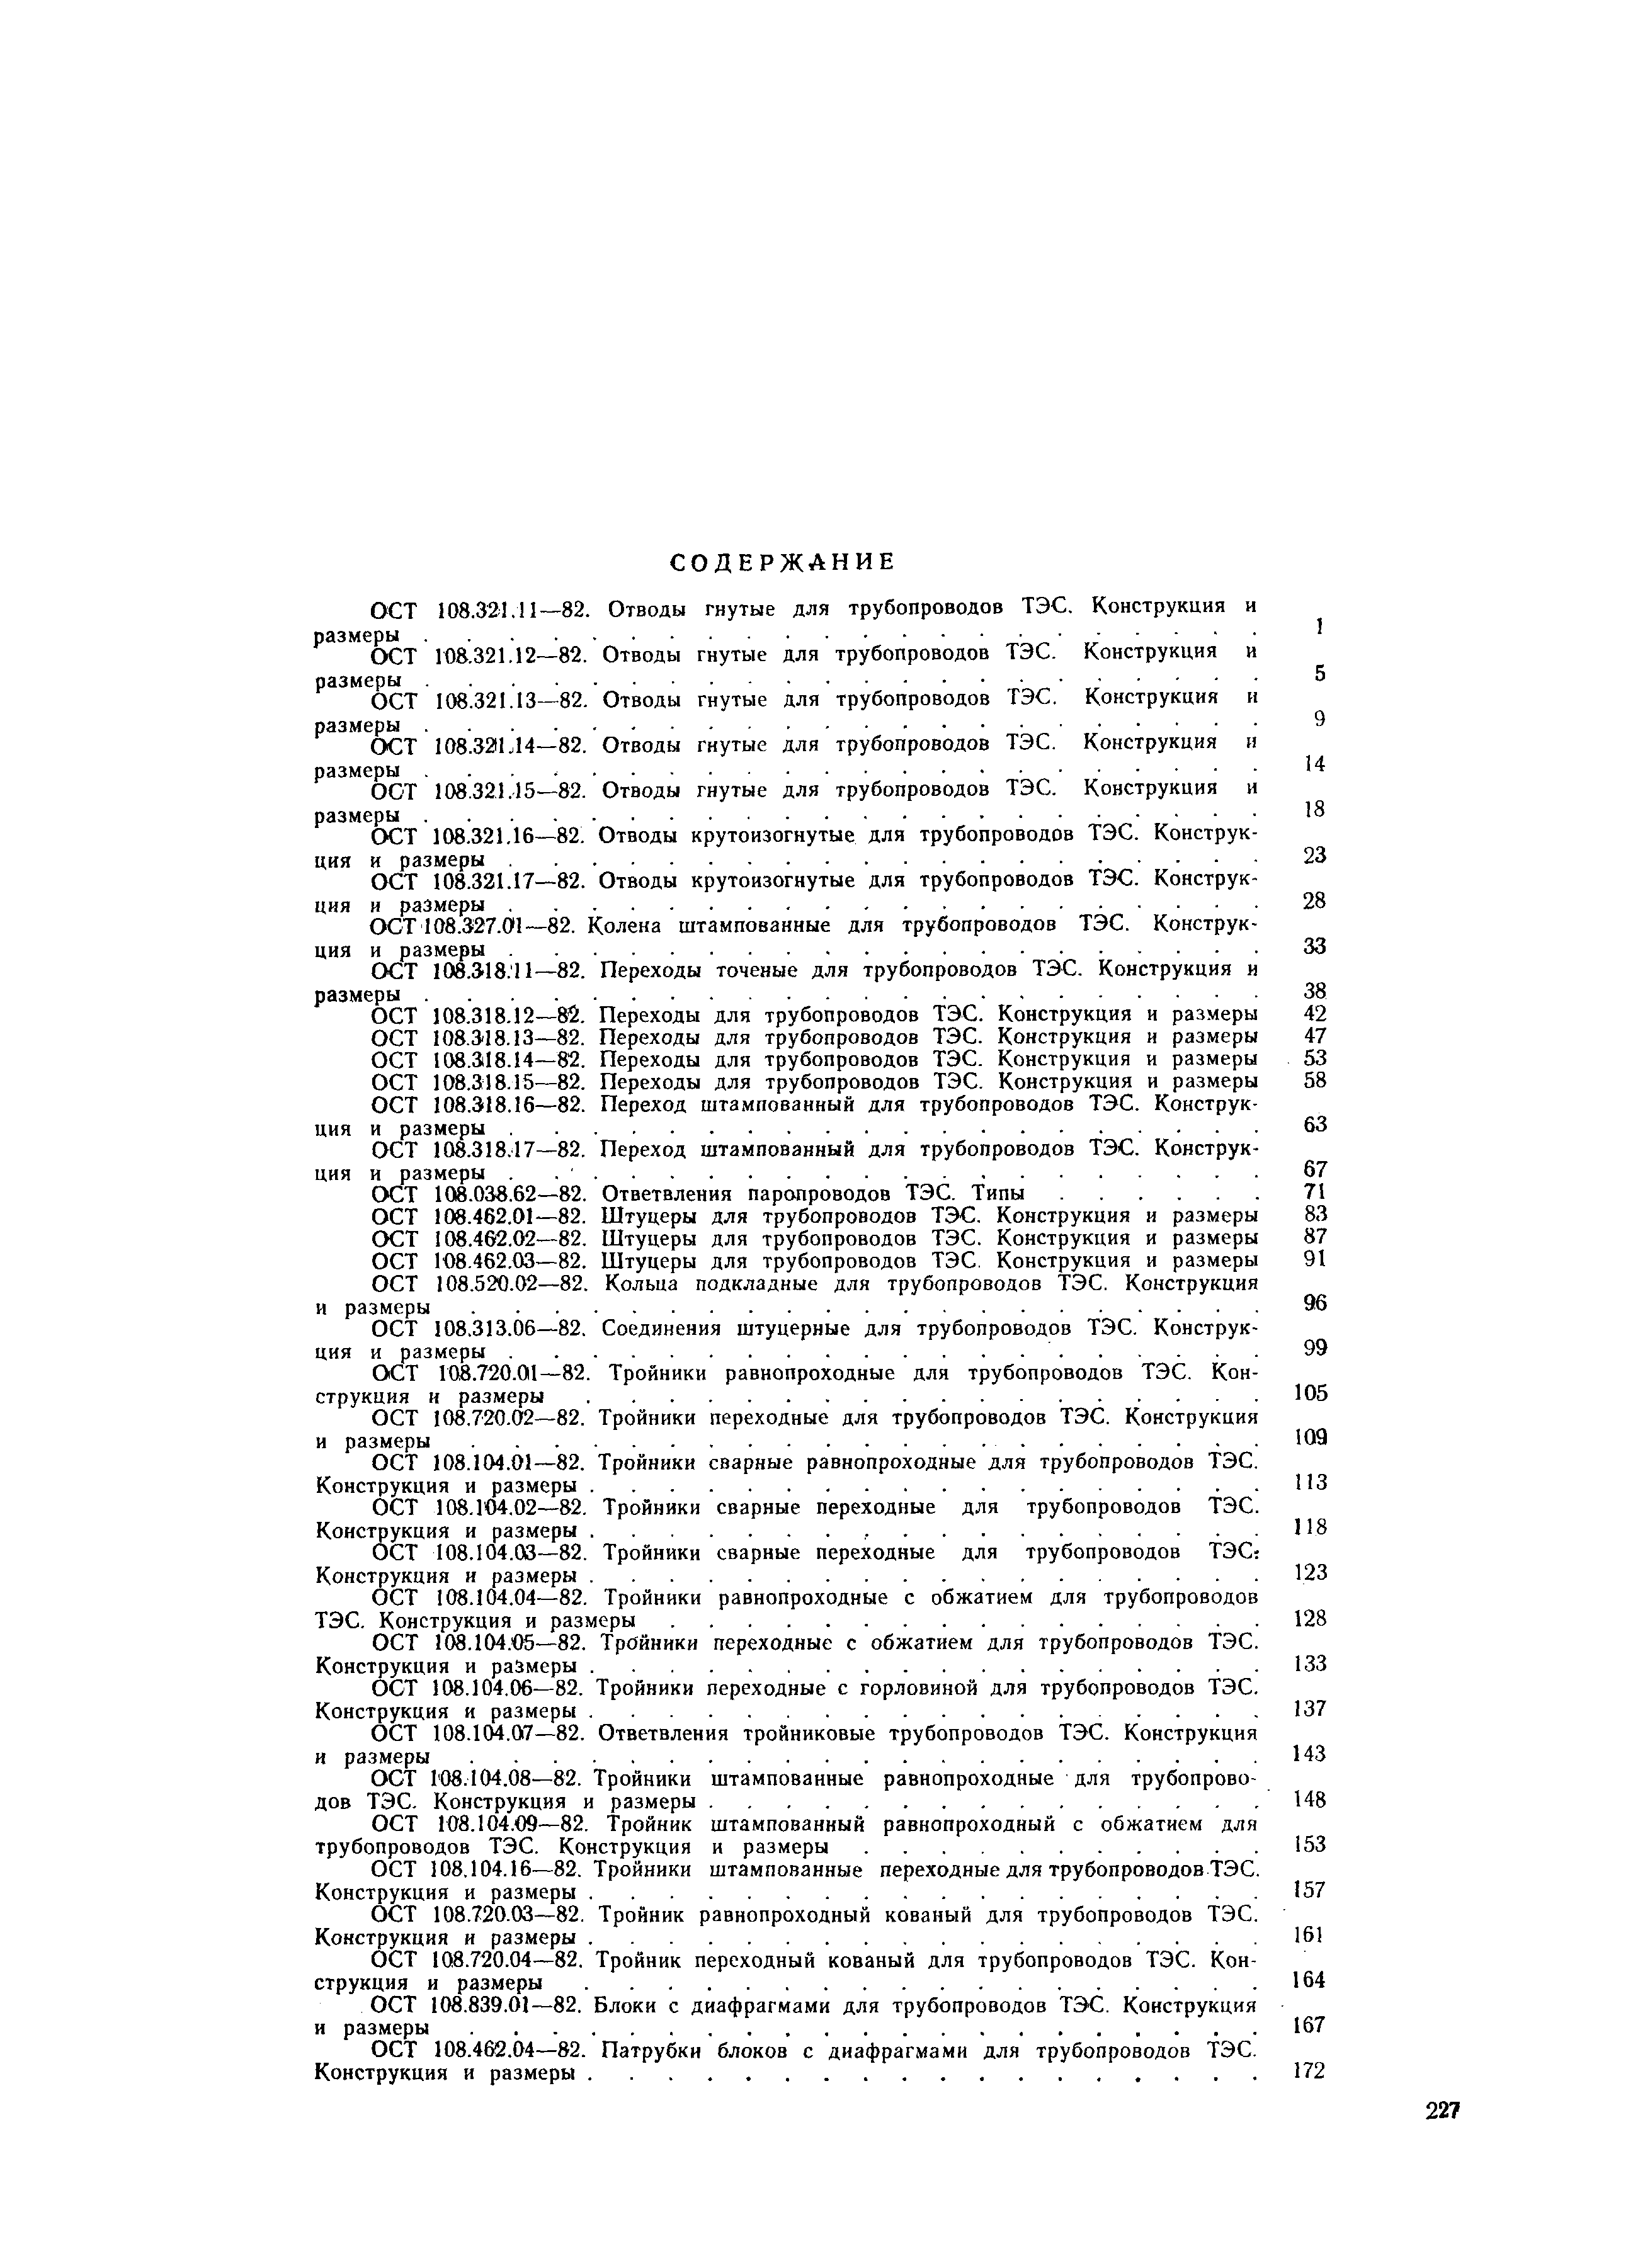 ОСТ 108.462.05-82